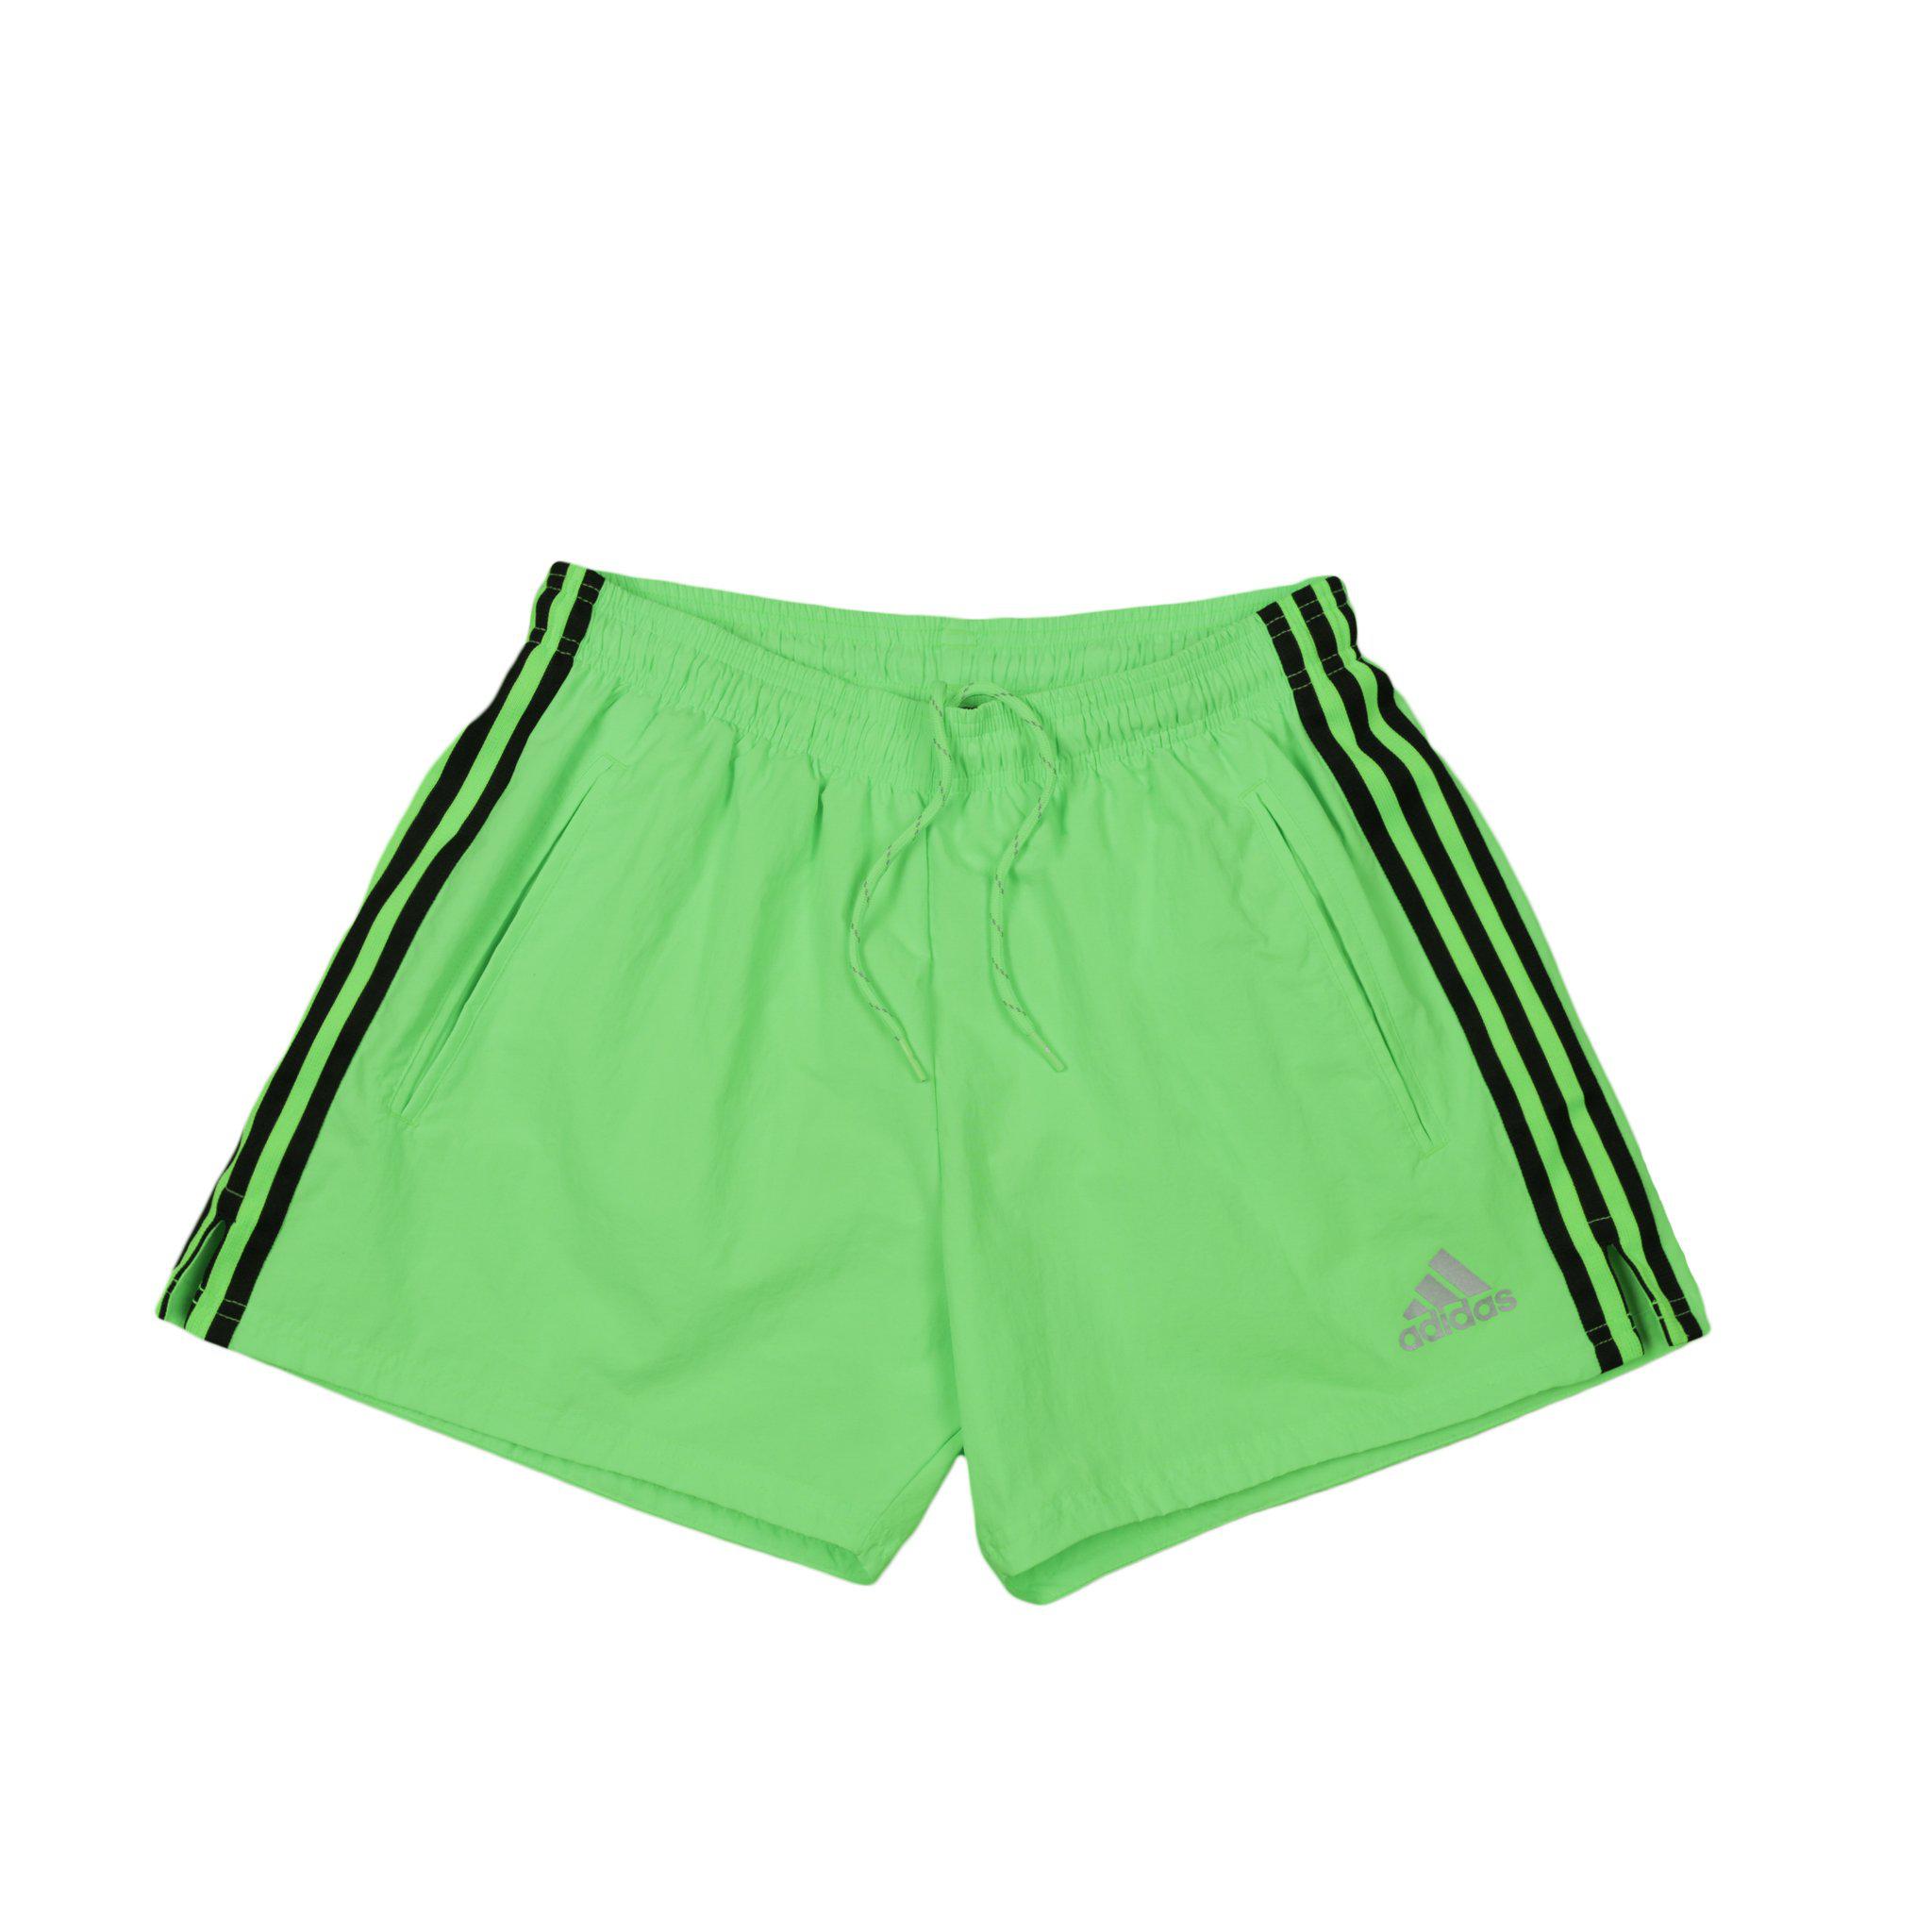 adidas lime green shorts